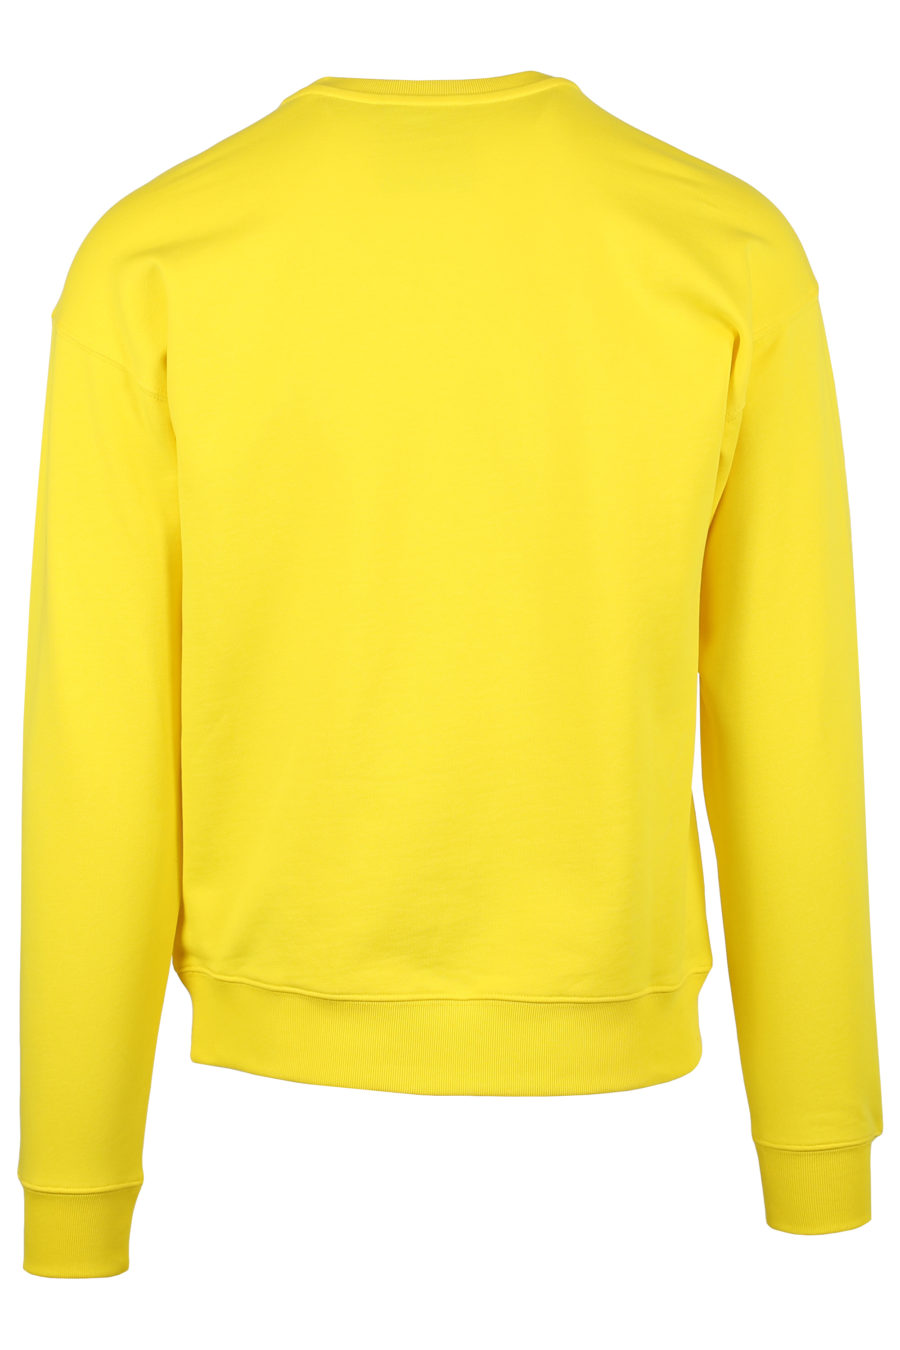 Sweatshirt gelb großes Logo vorne - IMG 0898